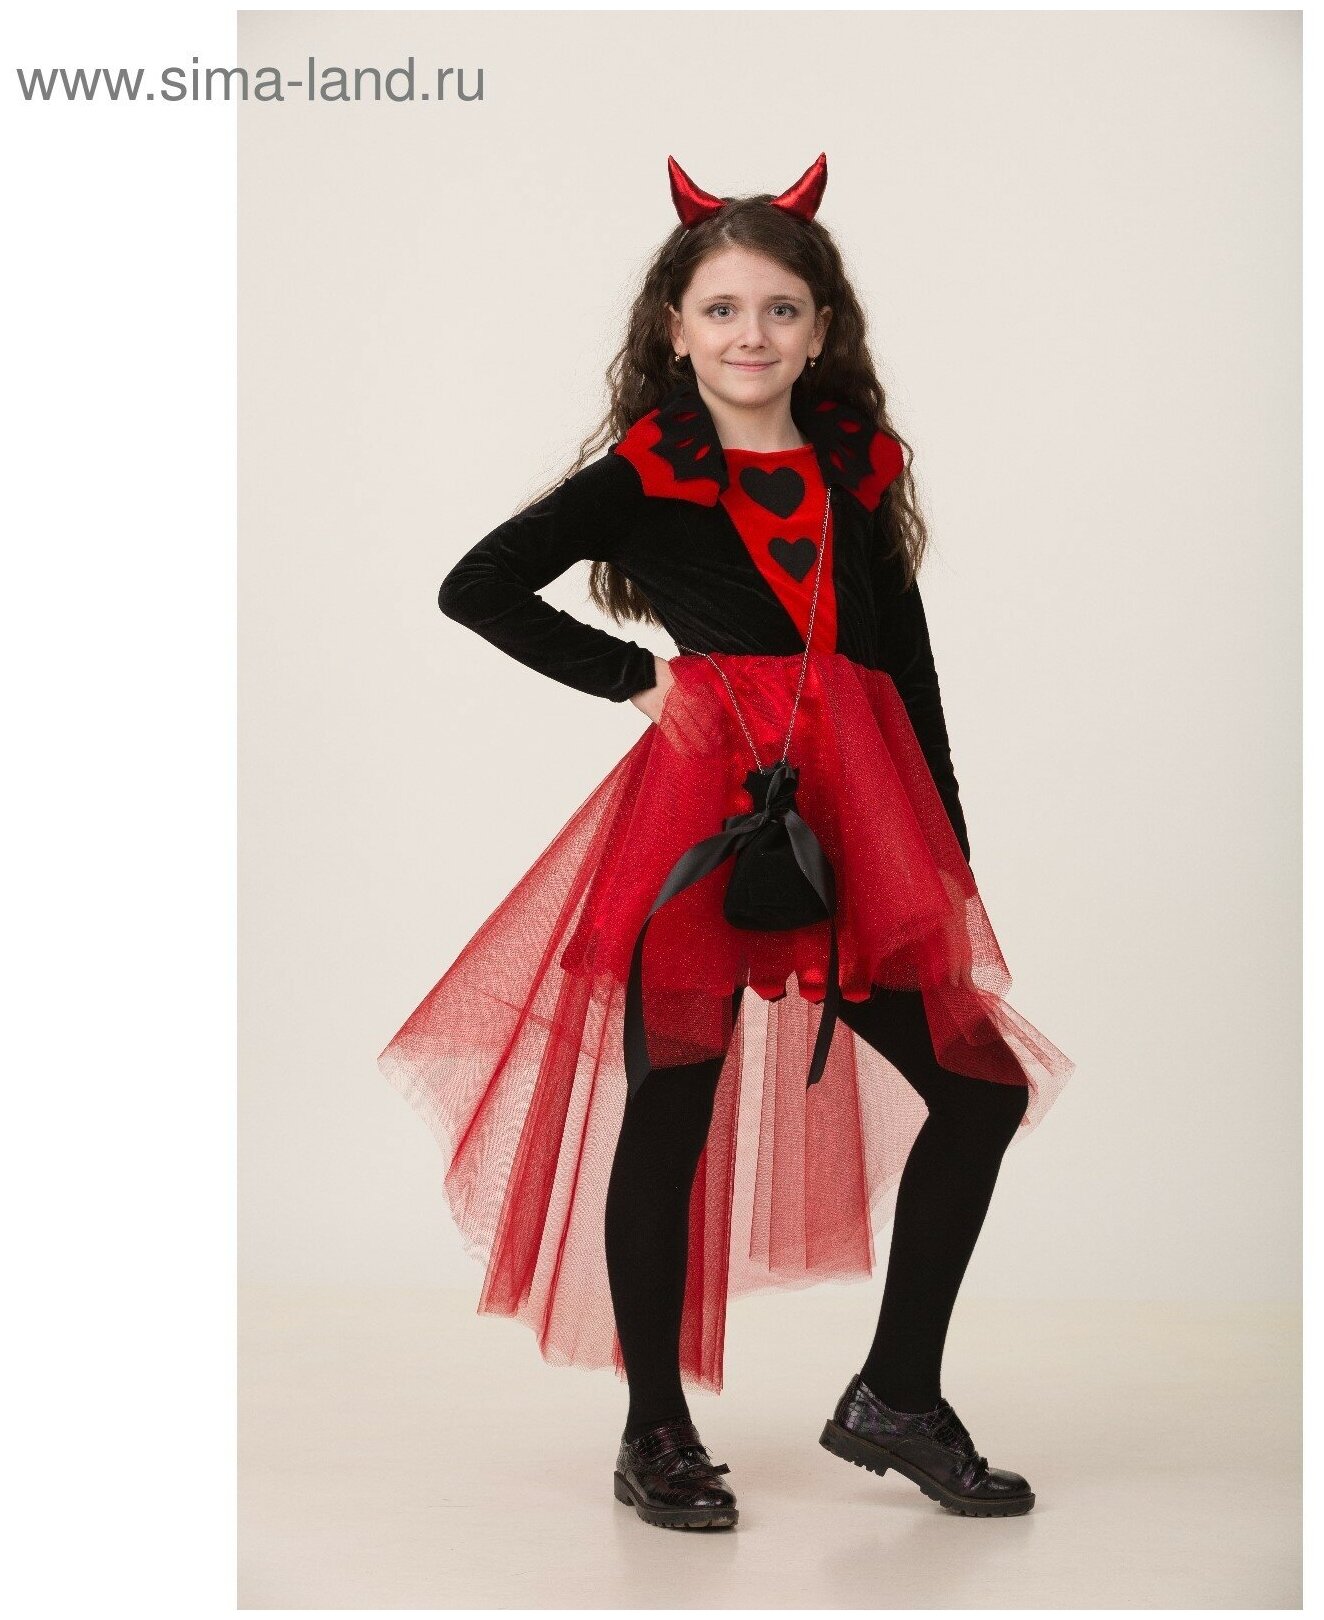 Карнавальный костюм «Дьяволица», платье, ободок с рожками, сумочка, р. 34, рост 134 см